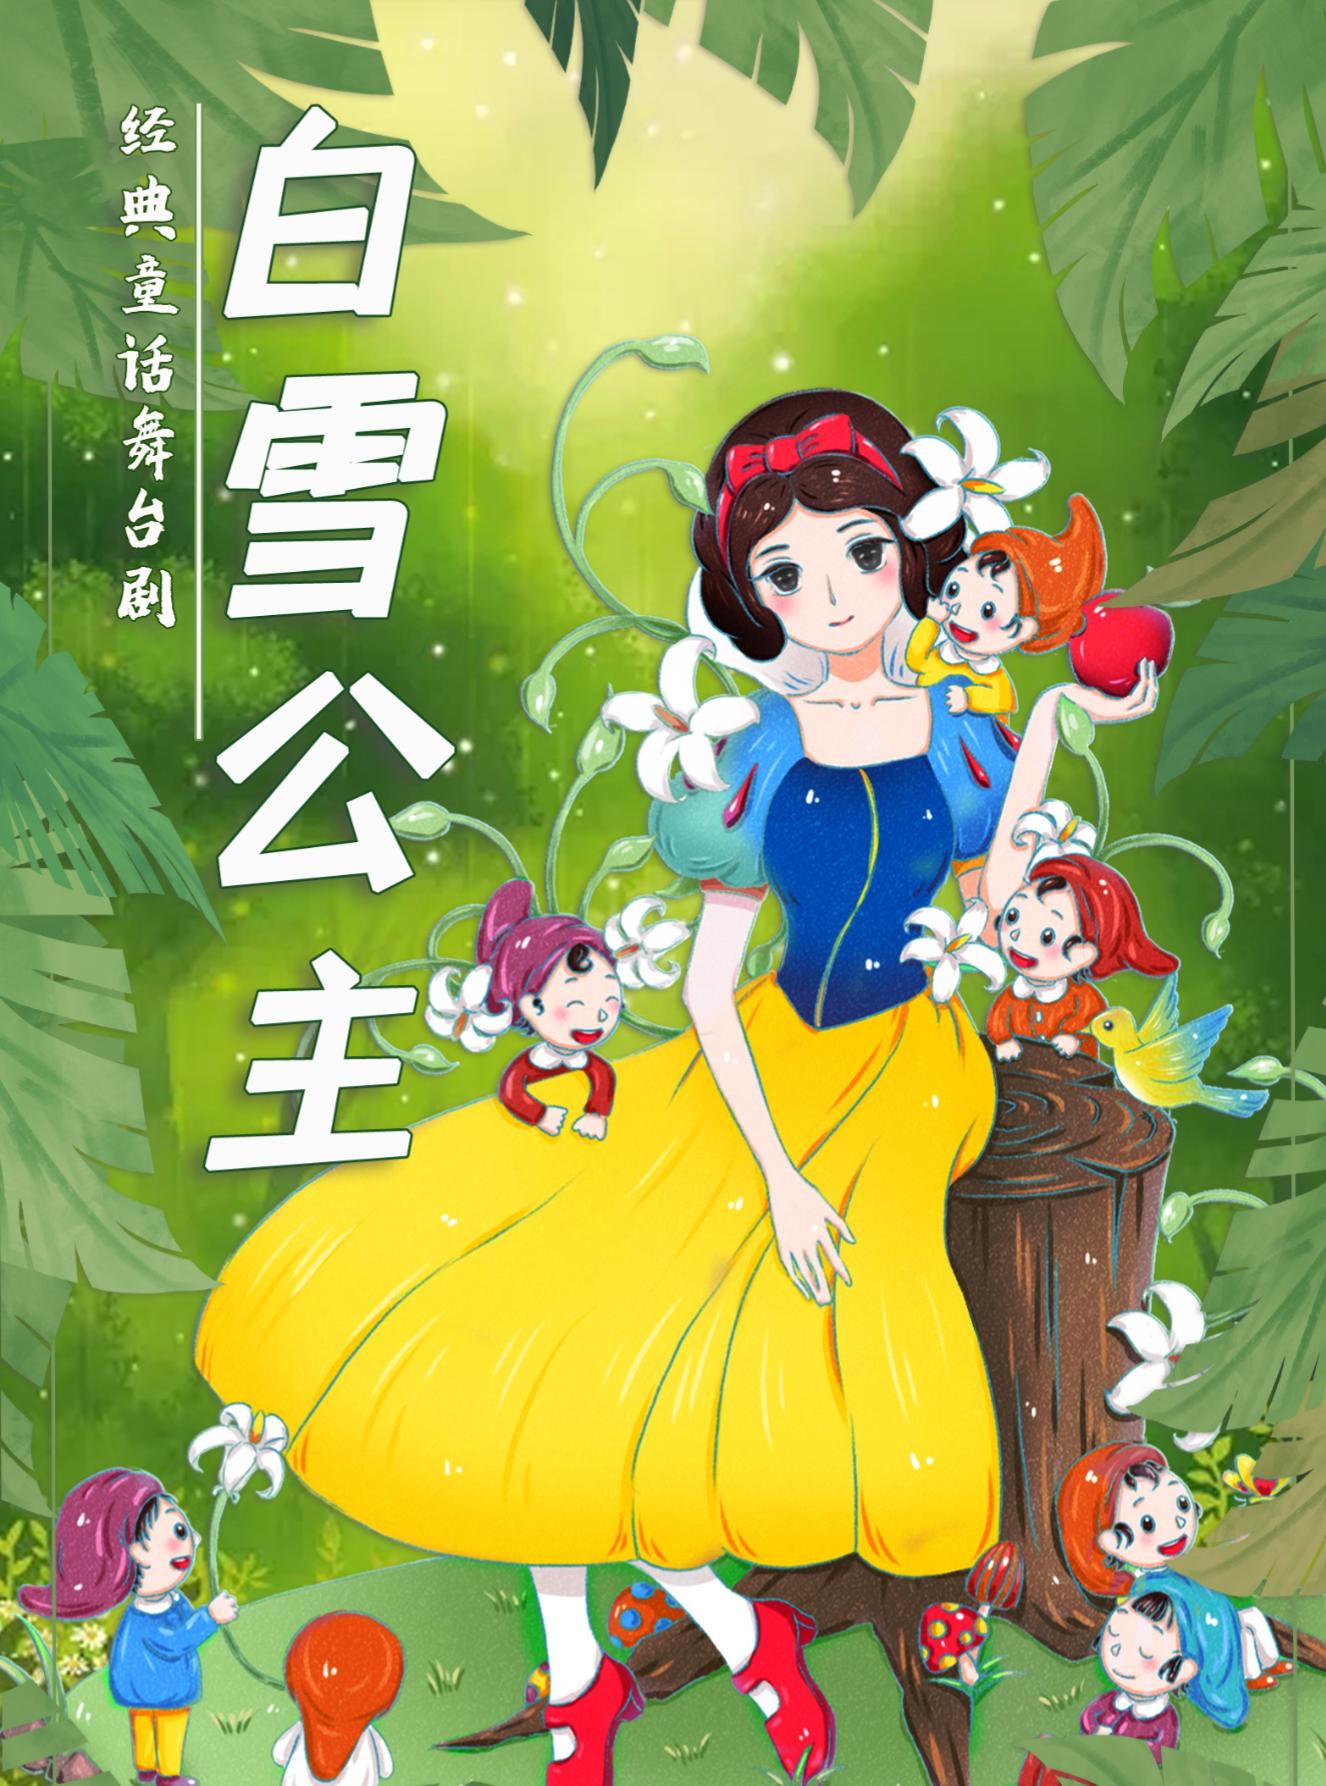 《白雪公主》经典梦幻儿童舞台剧杭州站